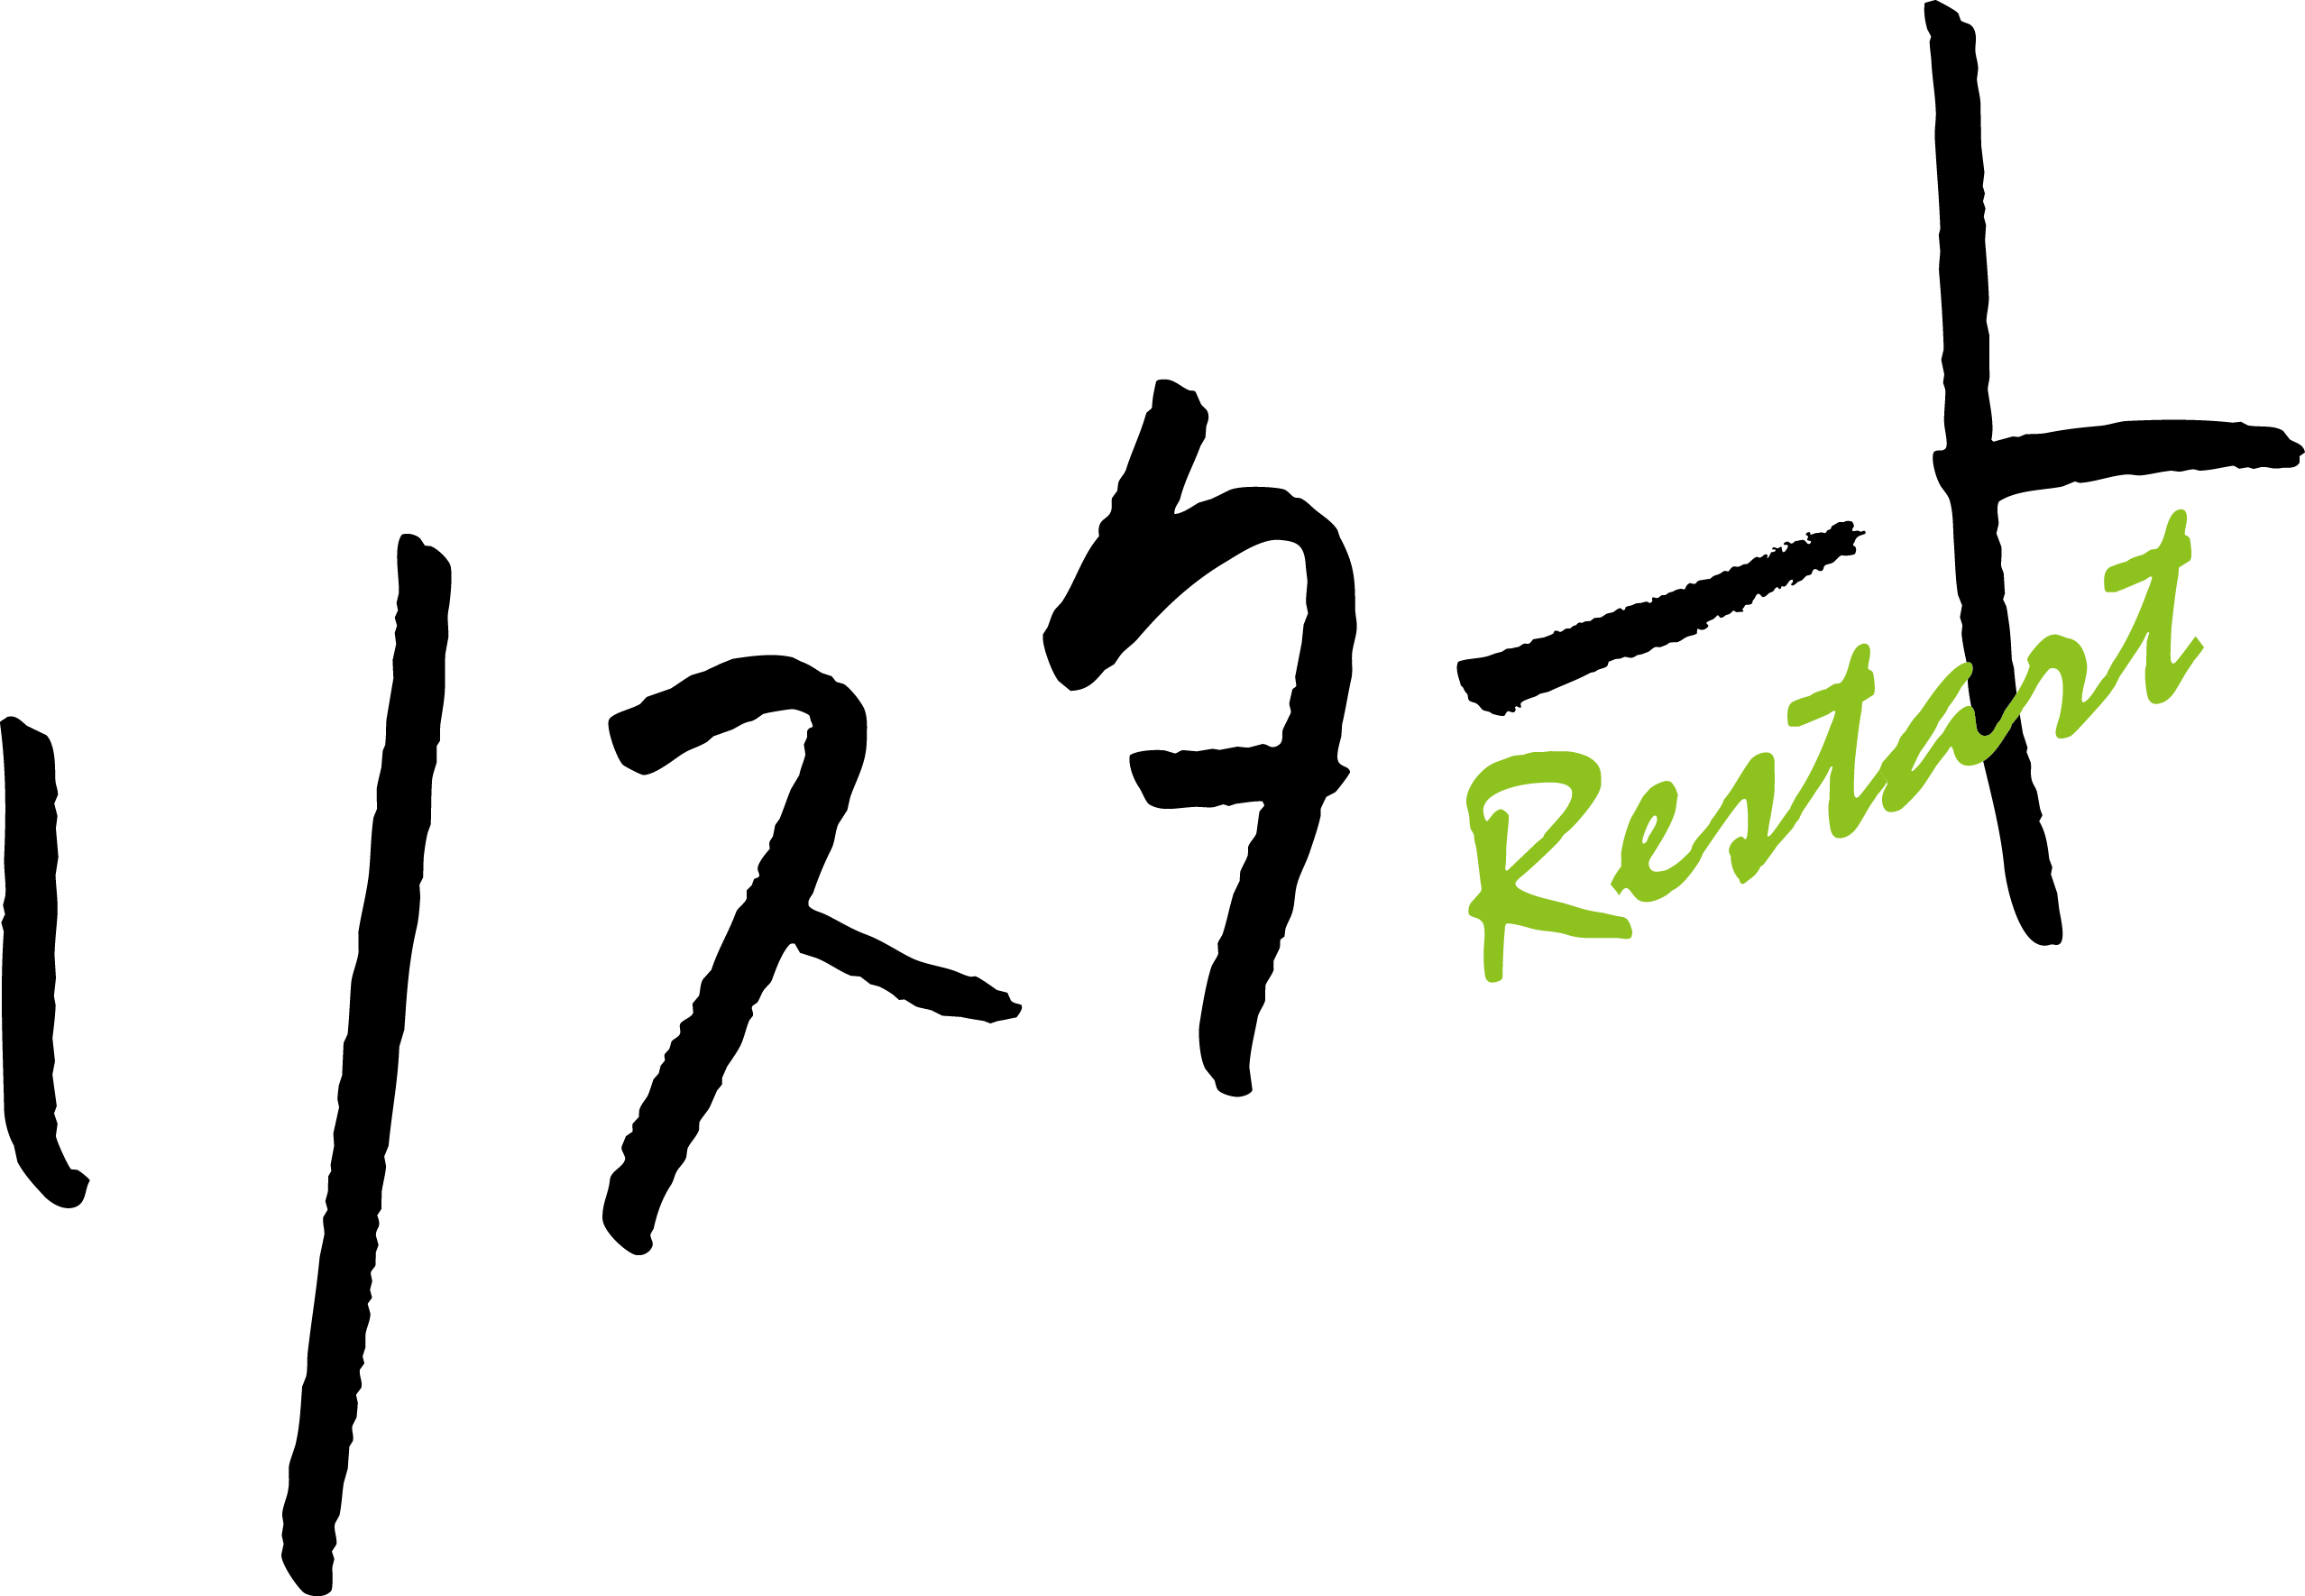 restart_logo_B